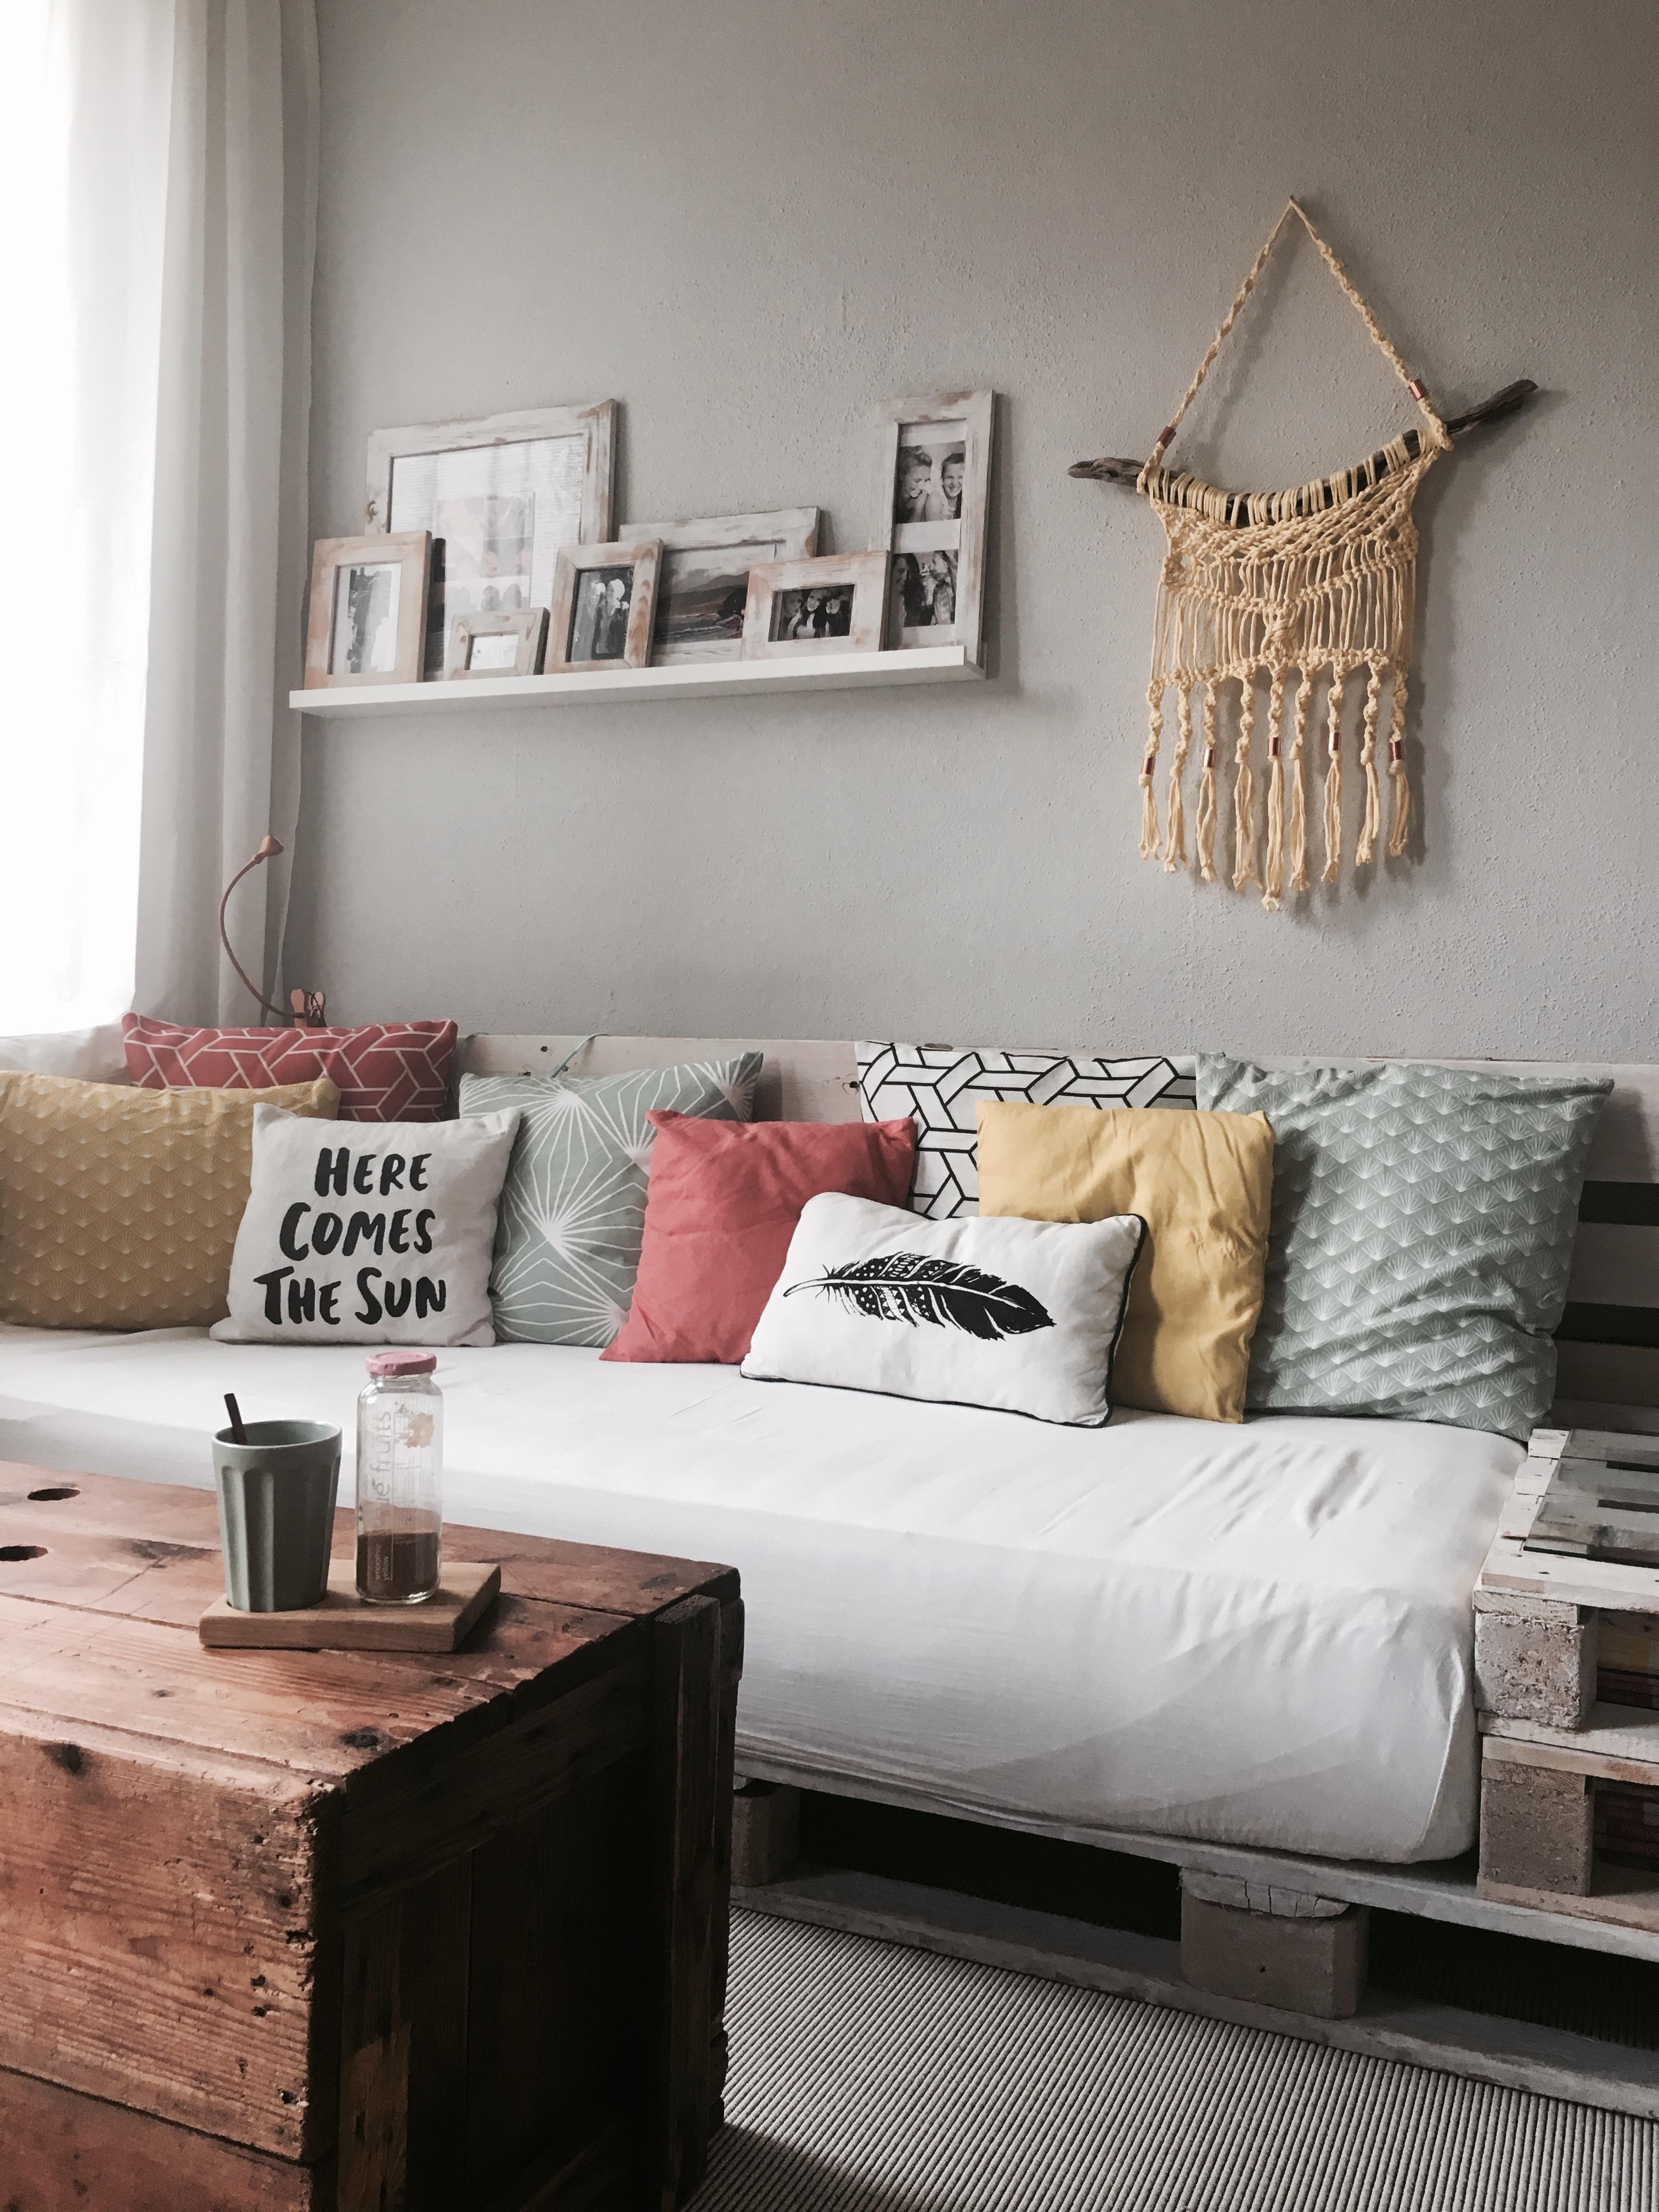 🌼
#livingroom #wohnzimmer #couchstyle 